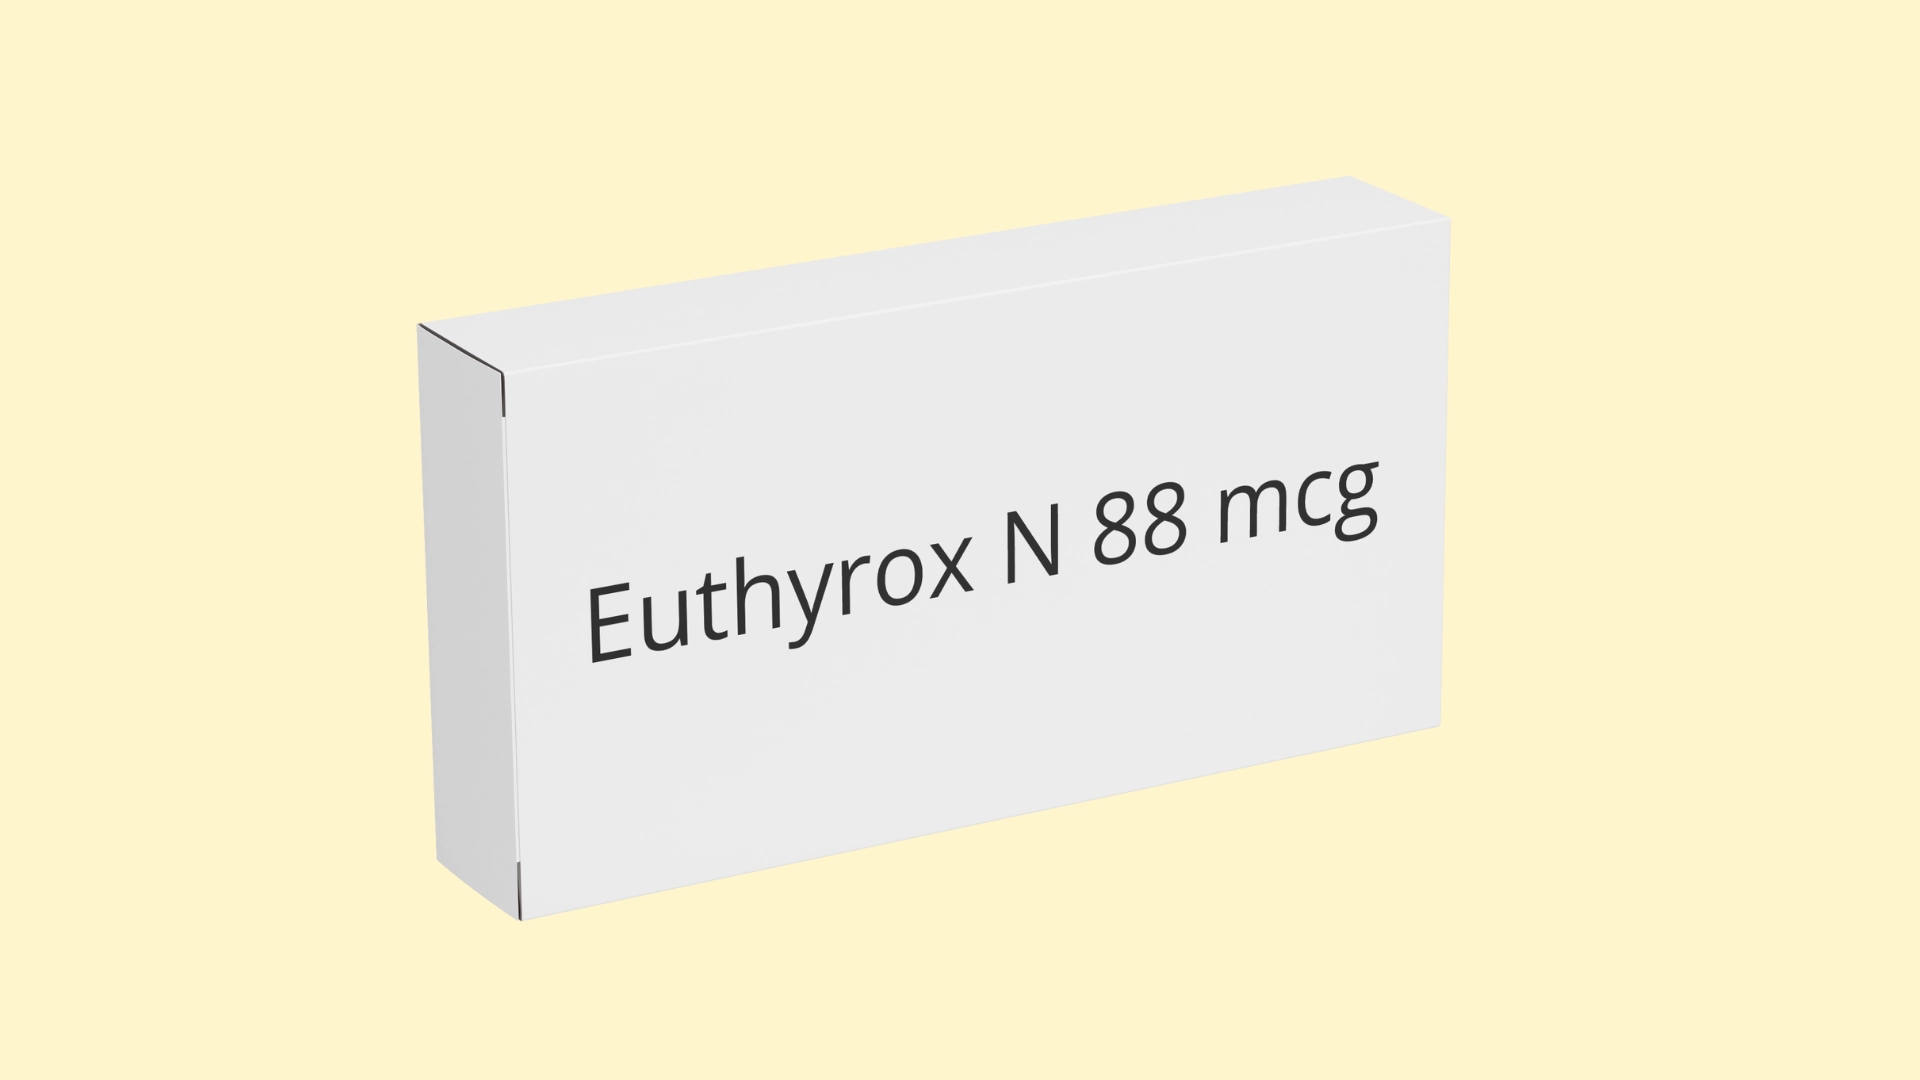 Euthyrox N 88 mcg - E-recepta - recepta online z konsultacją | cena, dawkowanie, przeciwwskazania